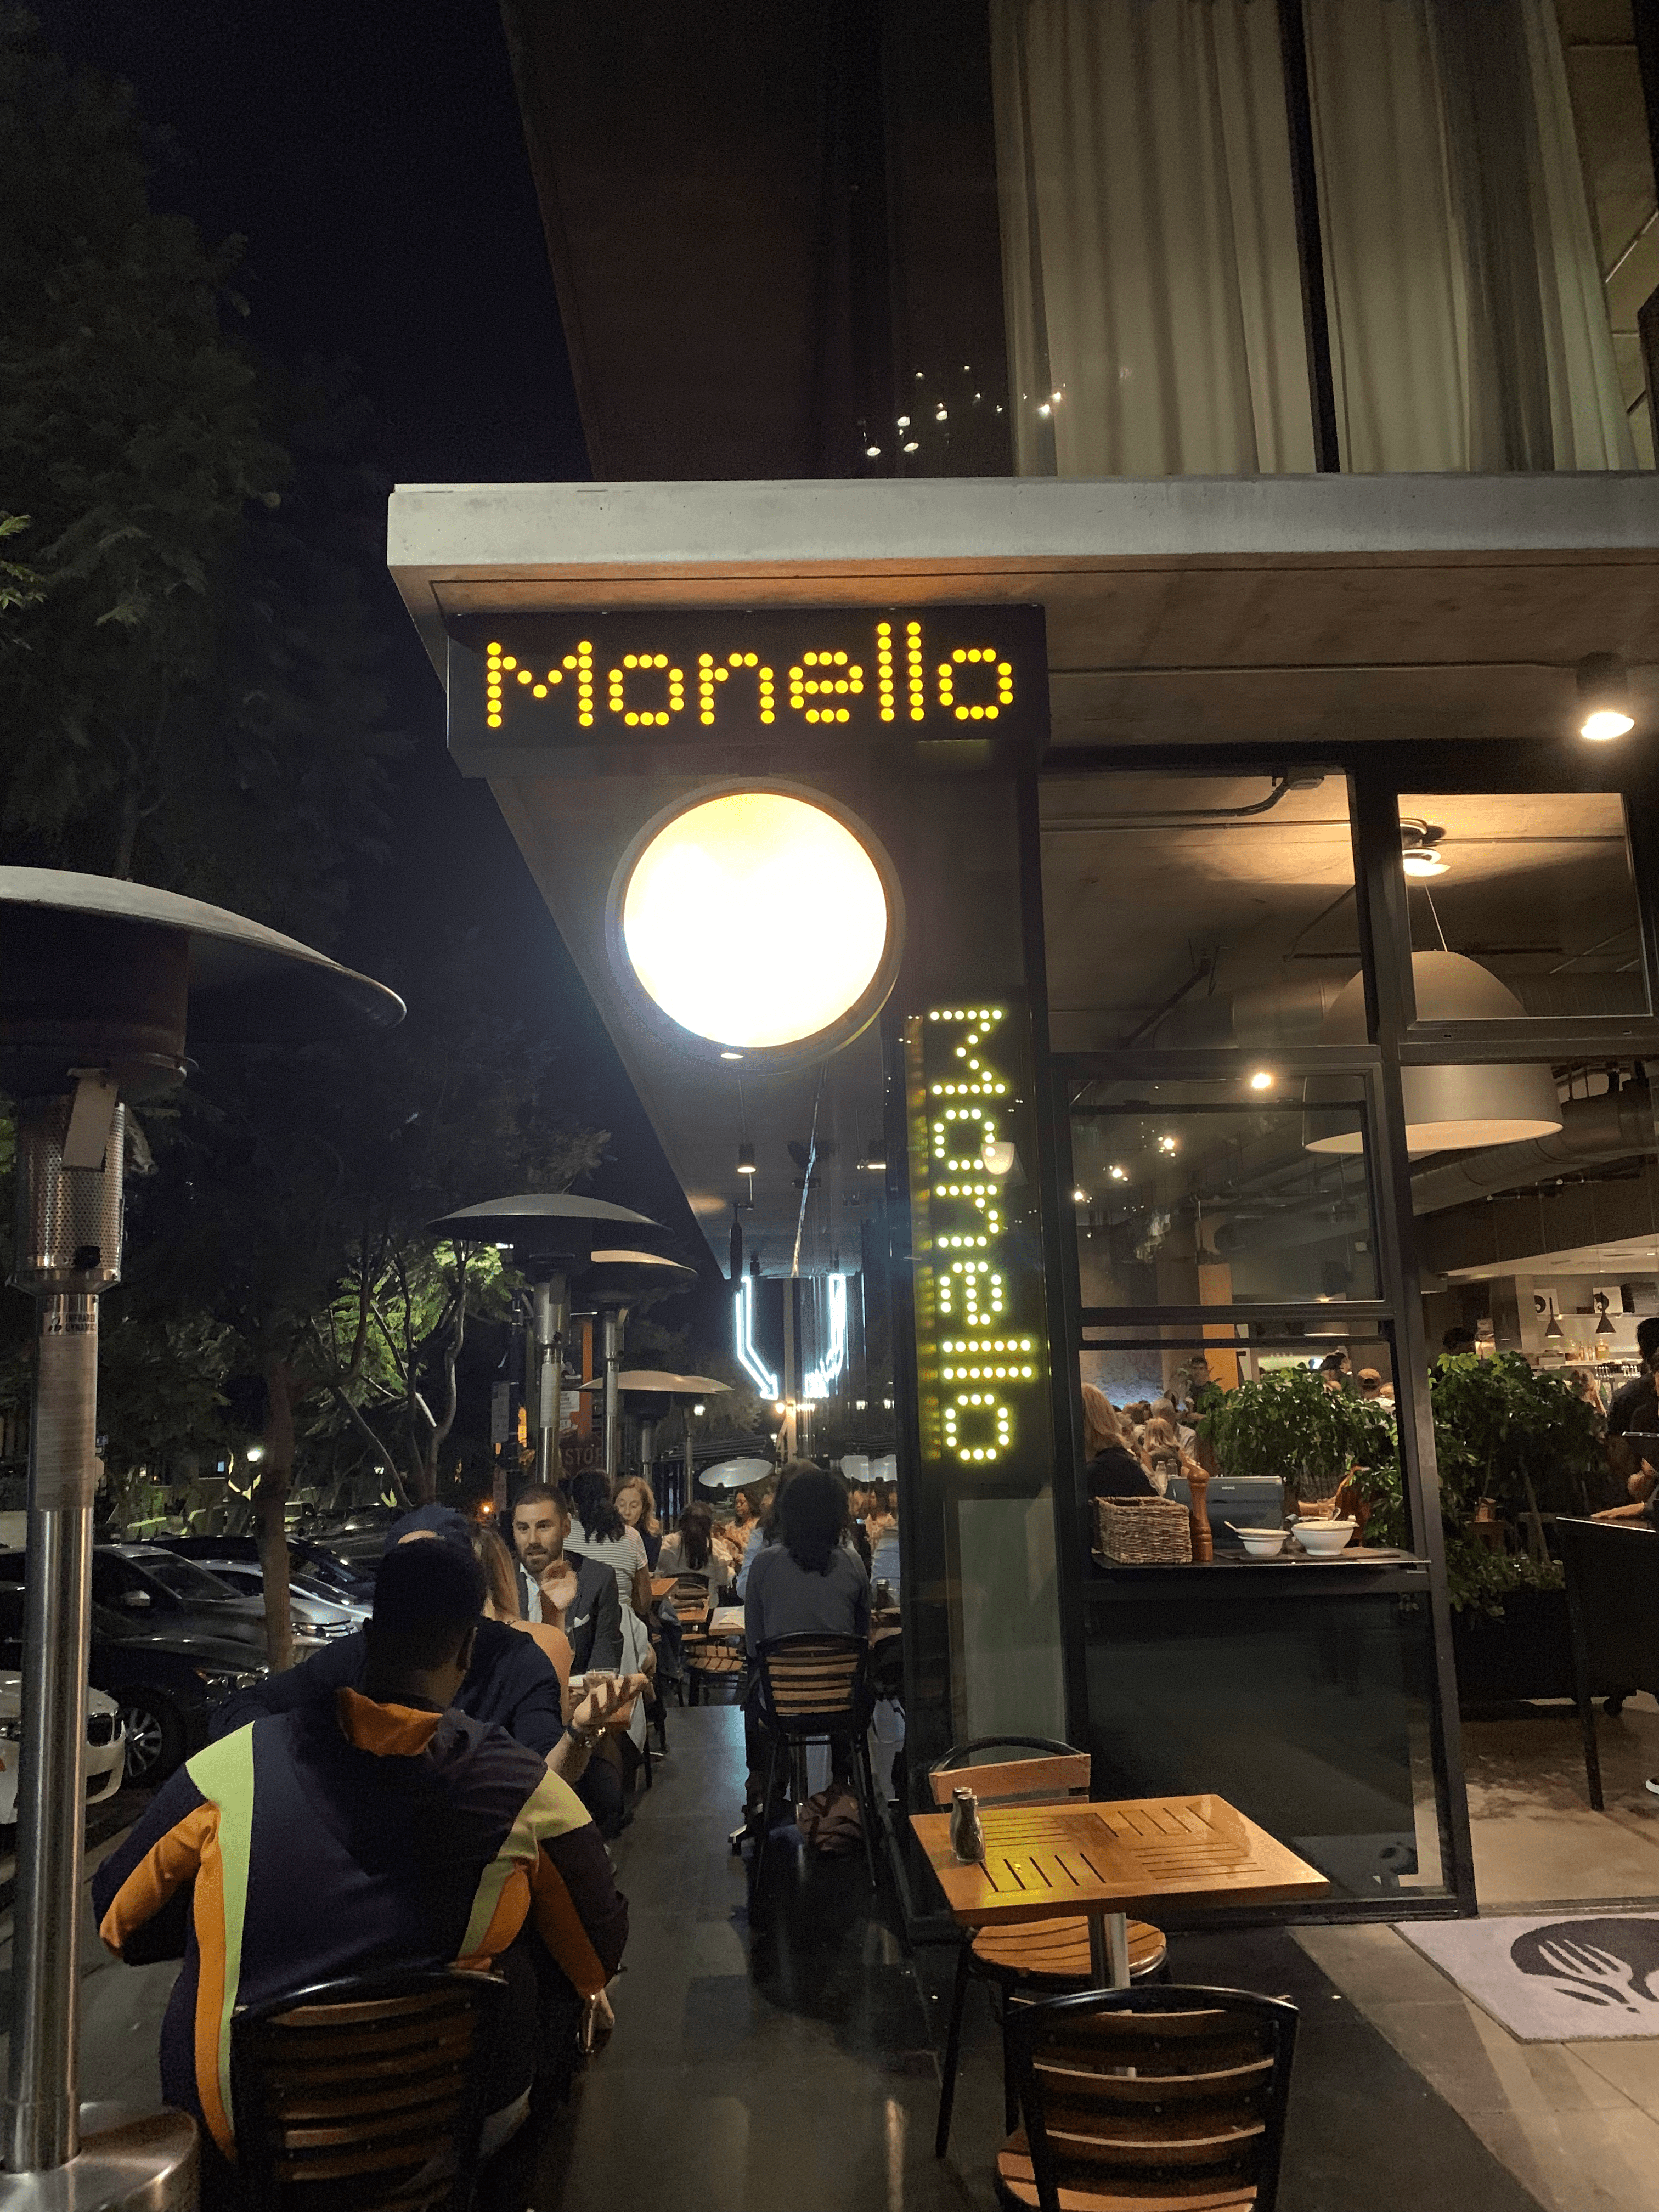 Bite-Size Reviews: Monello